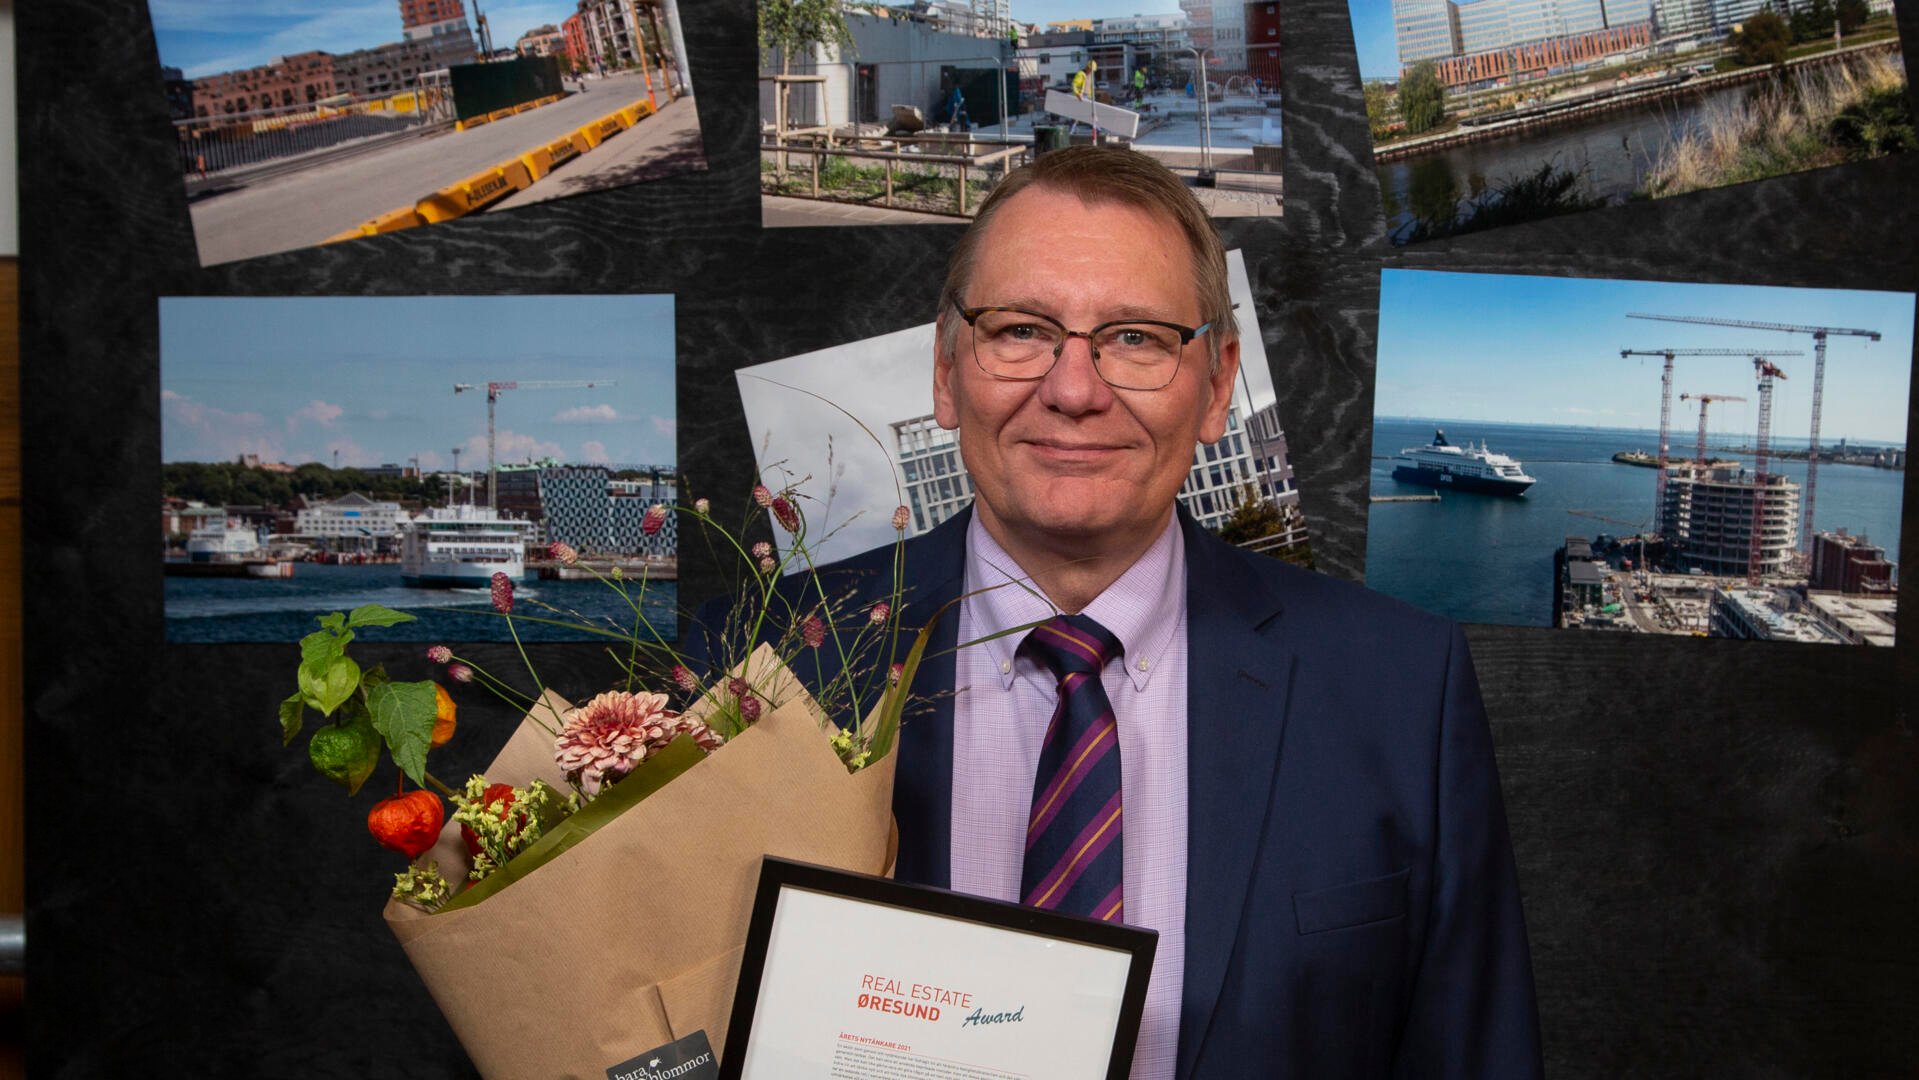 Branschinitiativet LFM30, Lokal färdplan för en klimatneutral bygg- och anläggningssektor i Malmö 2030, tilldelades årets Real Estate Øresund Award 2021. Midroc står bakom LFM30 och är en av initiativtagarna som tilldelades Real Estate Øresund Award 2021 för Årets Nytänkare.